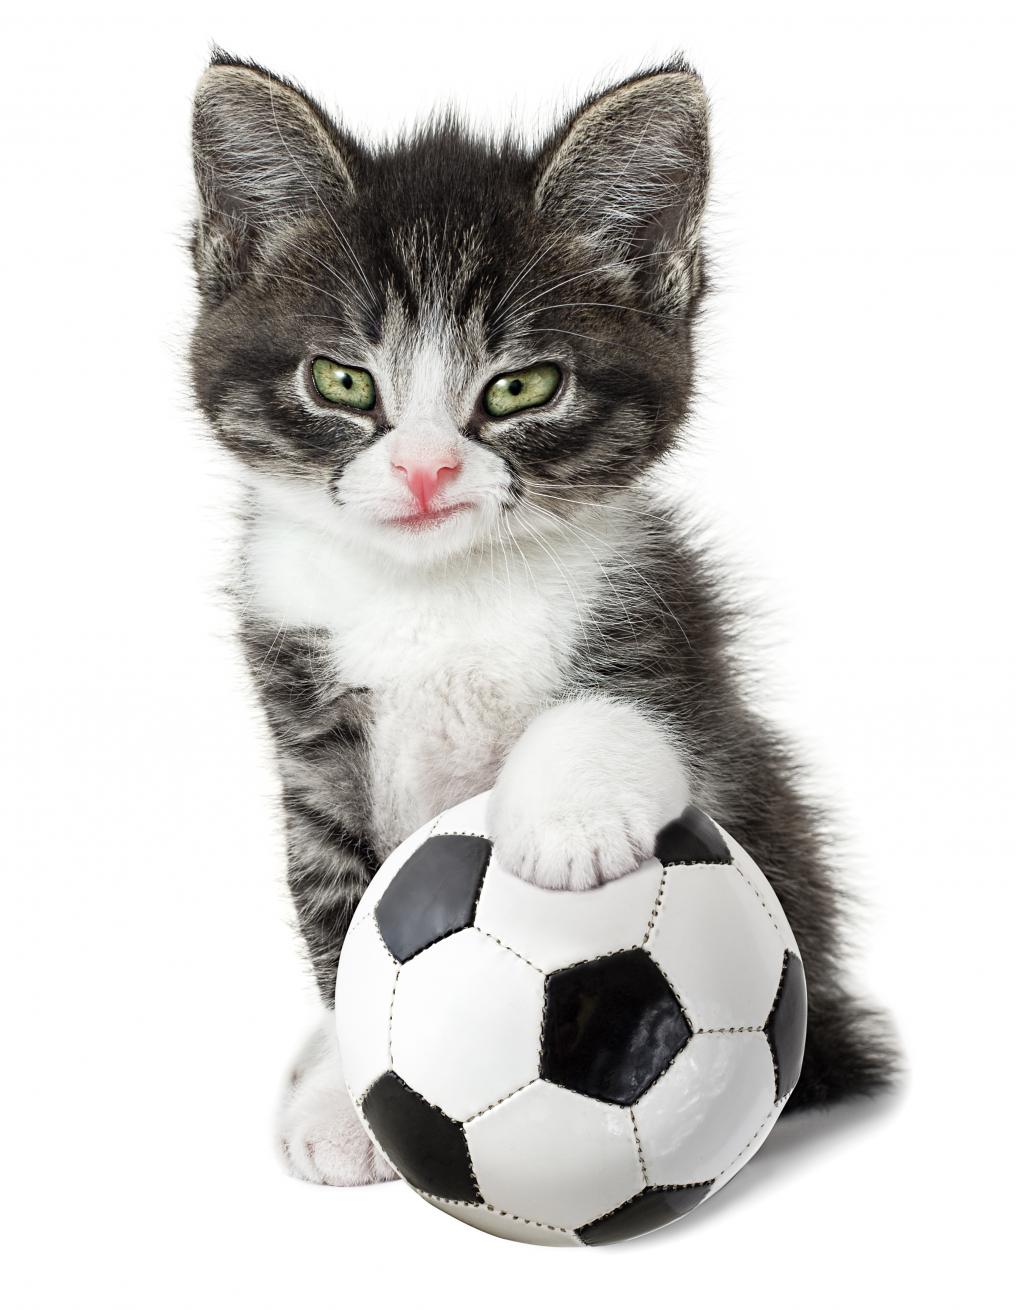 Soccer Cat Pulisic